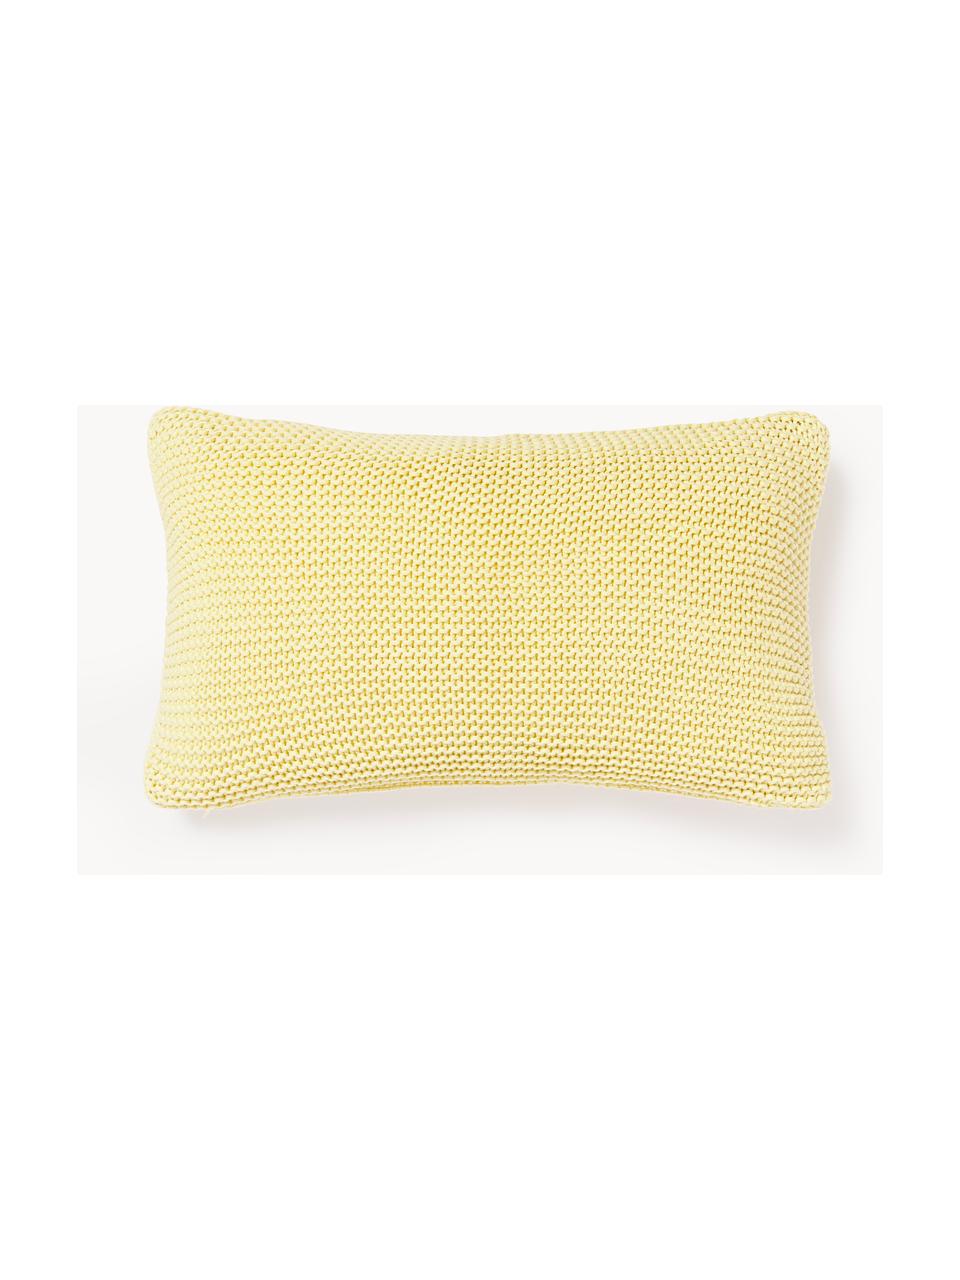 Dzianinowa poszewka na poduszkę z bawełny organicznej Adalyn, 100% bawełna organiczna, certyfikat GOTS, Jasny żółty, S 30 x D 50 cm